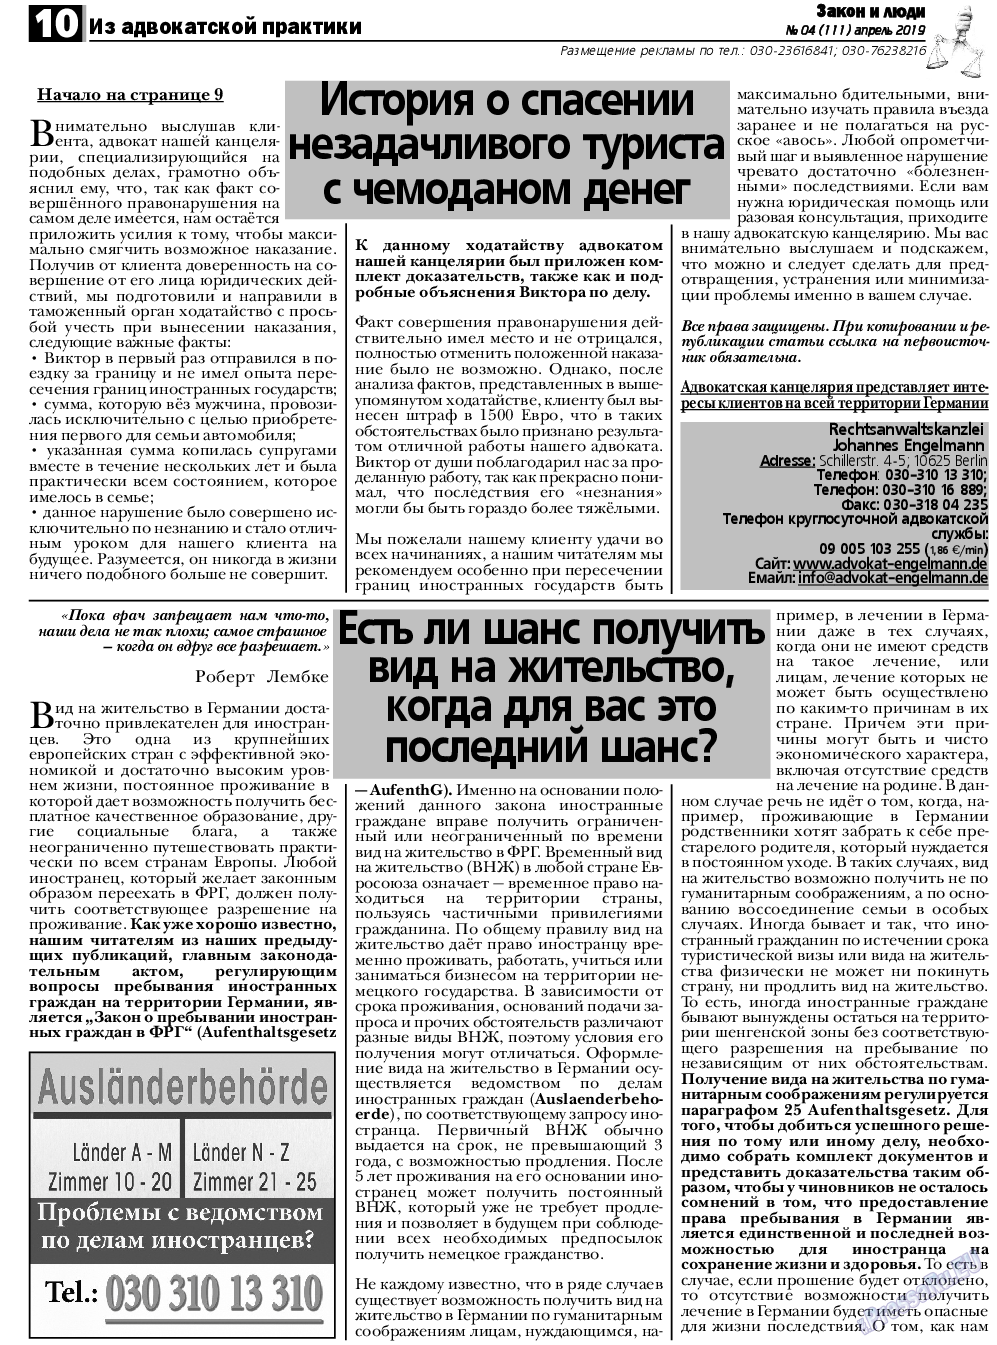 Закон и люди, газета. 2019 №4 стр.10